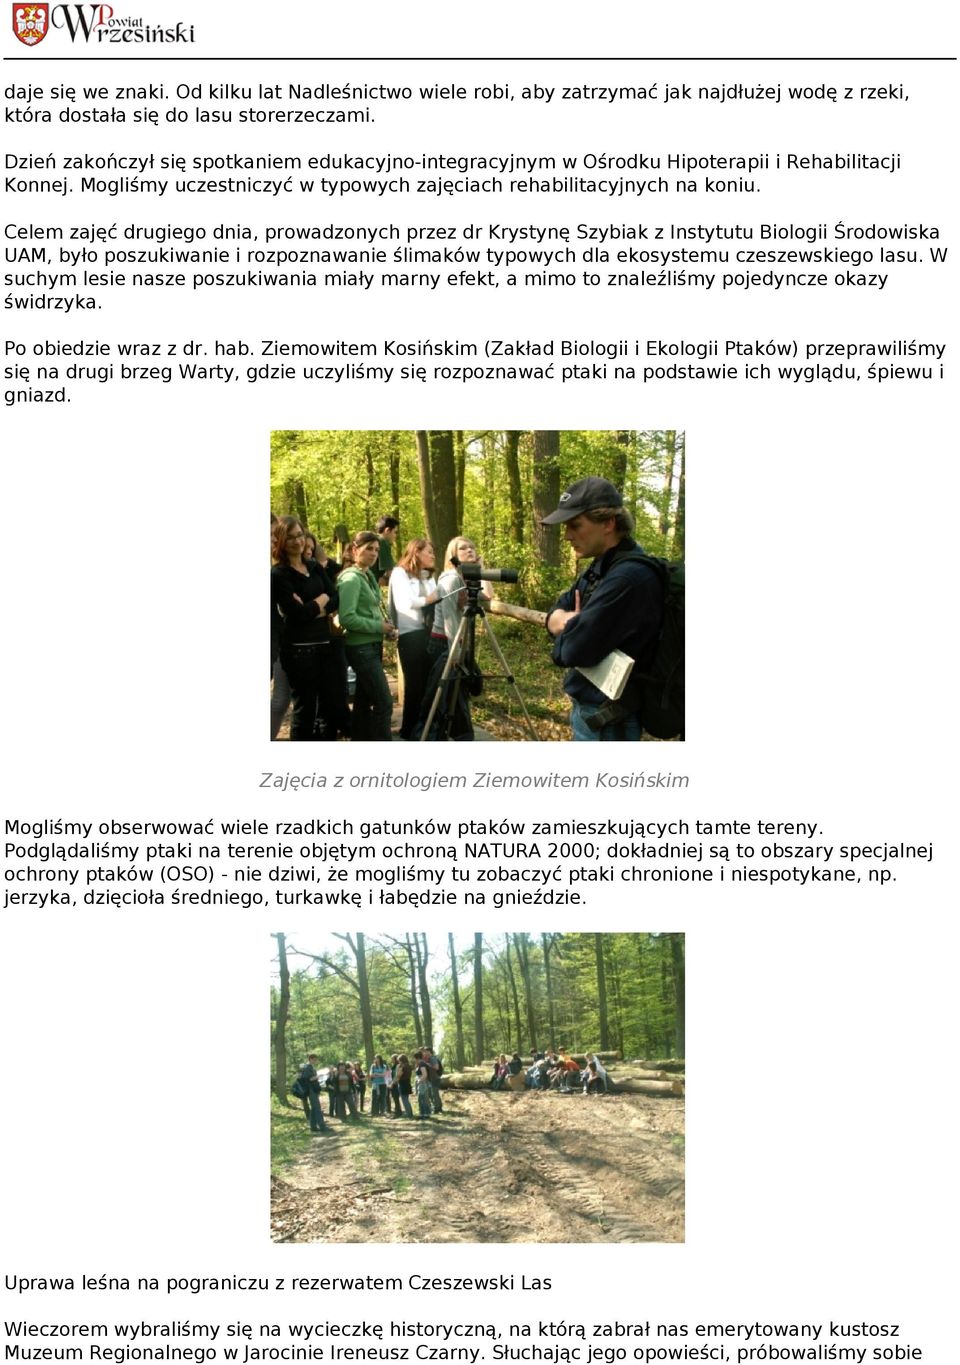 Celem zajęć drugiego dnia, prowadzonych przez dr Krystynę Szybiak z Instytutu Biologii Środowiska UAM, było poszukiwanie i rozpoznawanie ślimaków typowych dla ekosystemu czeszewskiego lasu.